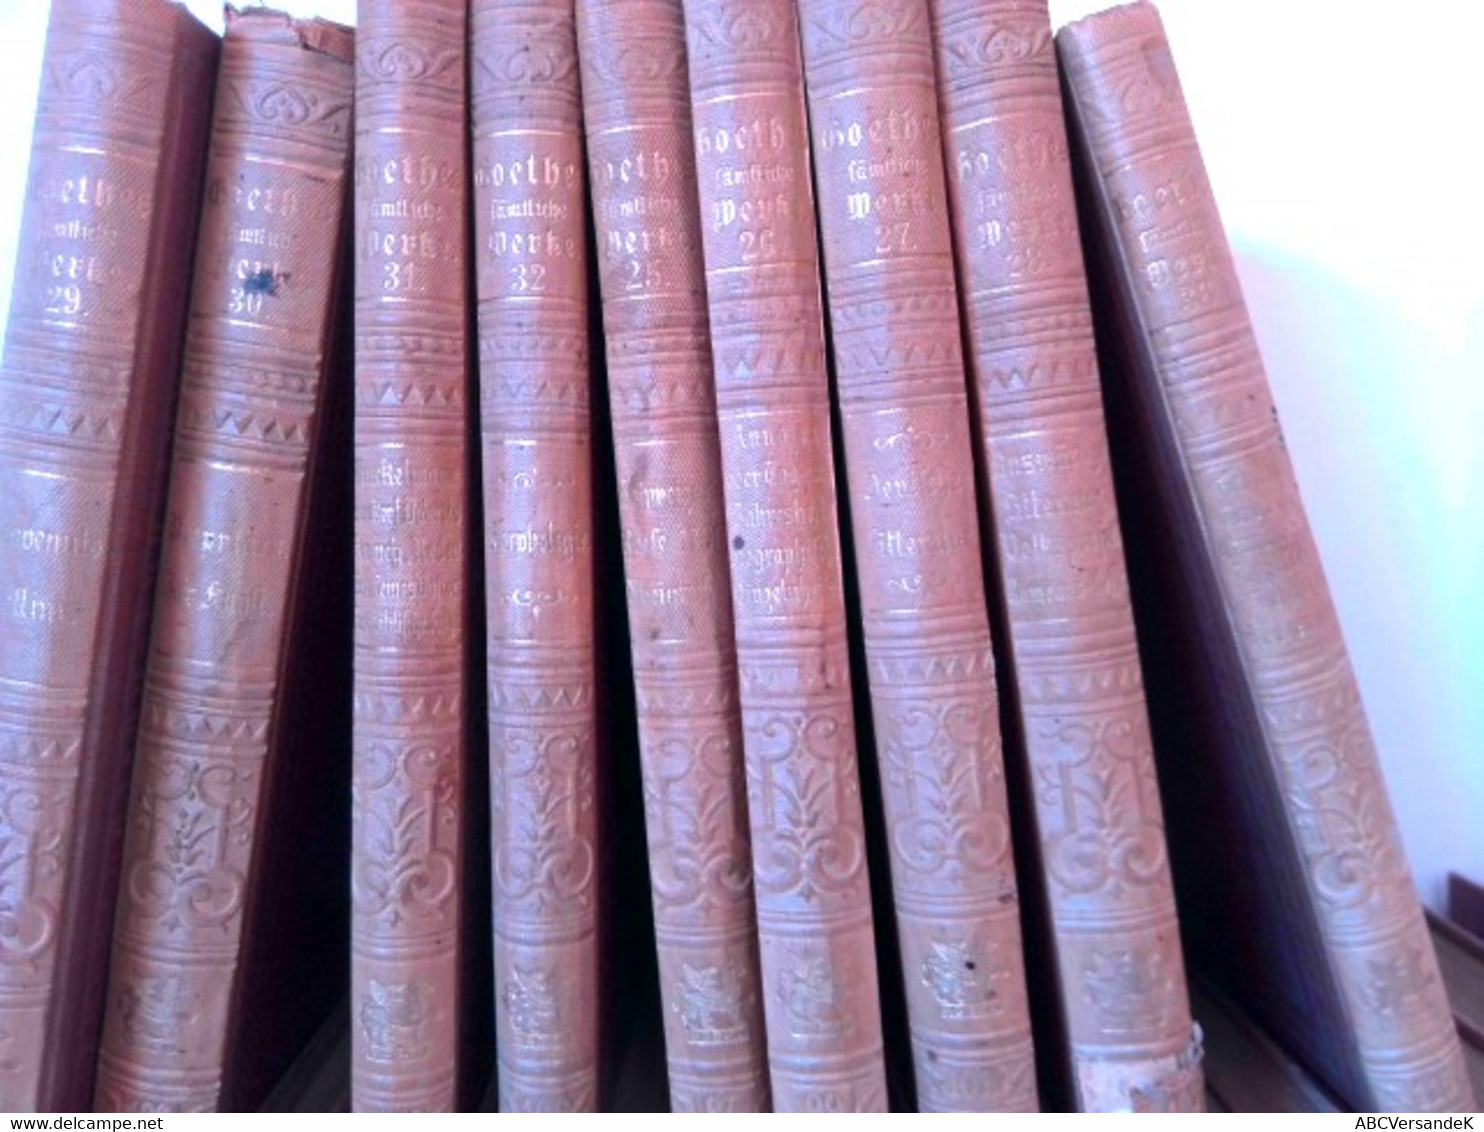 Konvolut Bestehend Aus 36 Bänden Zum Thema: Goethes Sämtliche Werke Aus Der  Cottasche Bibliothek Der Weltlite - Deutschsprachige Autoren